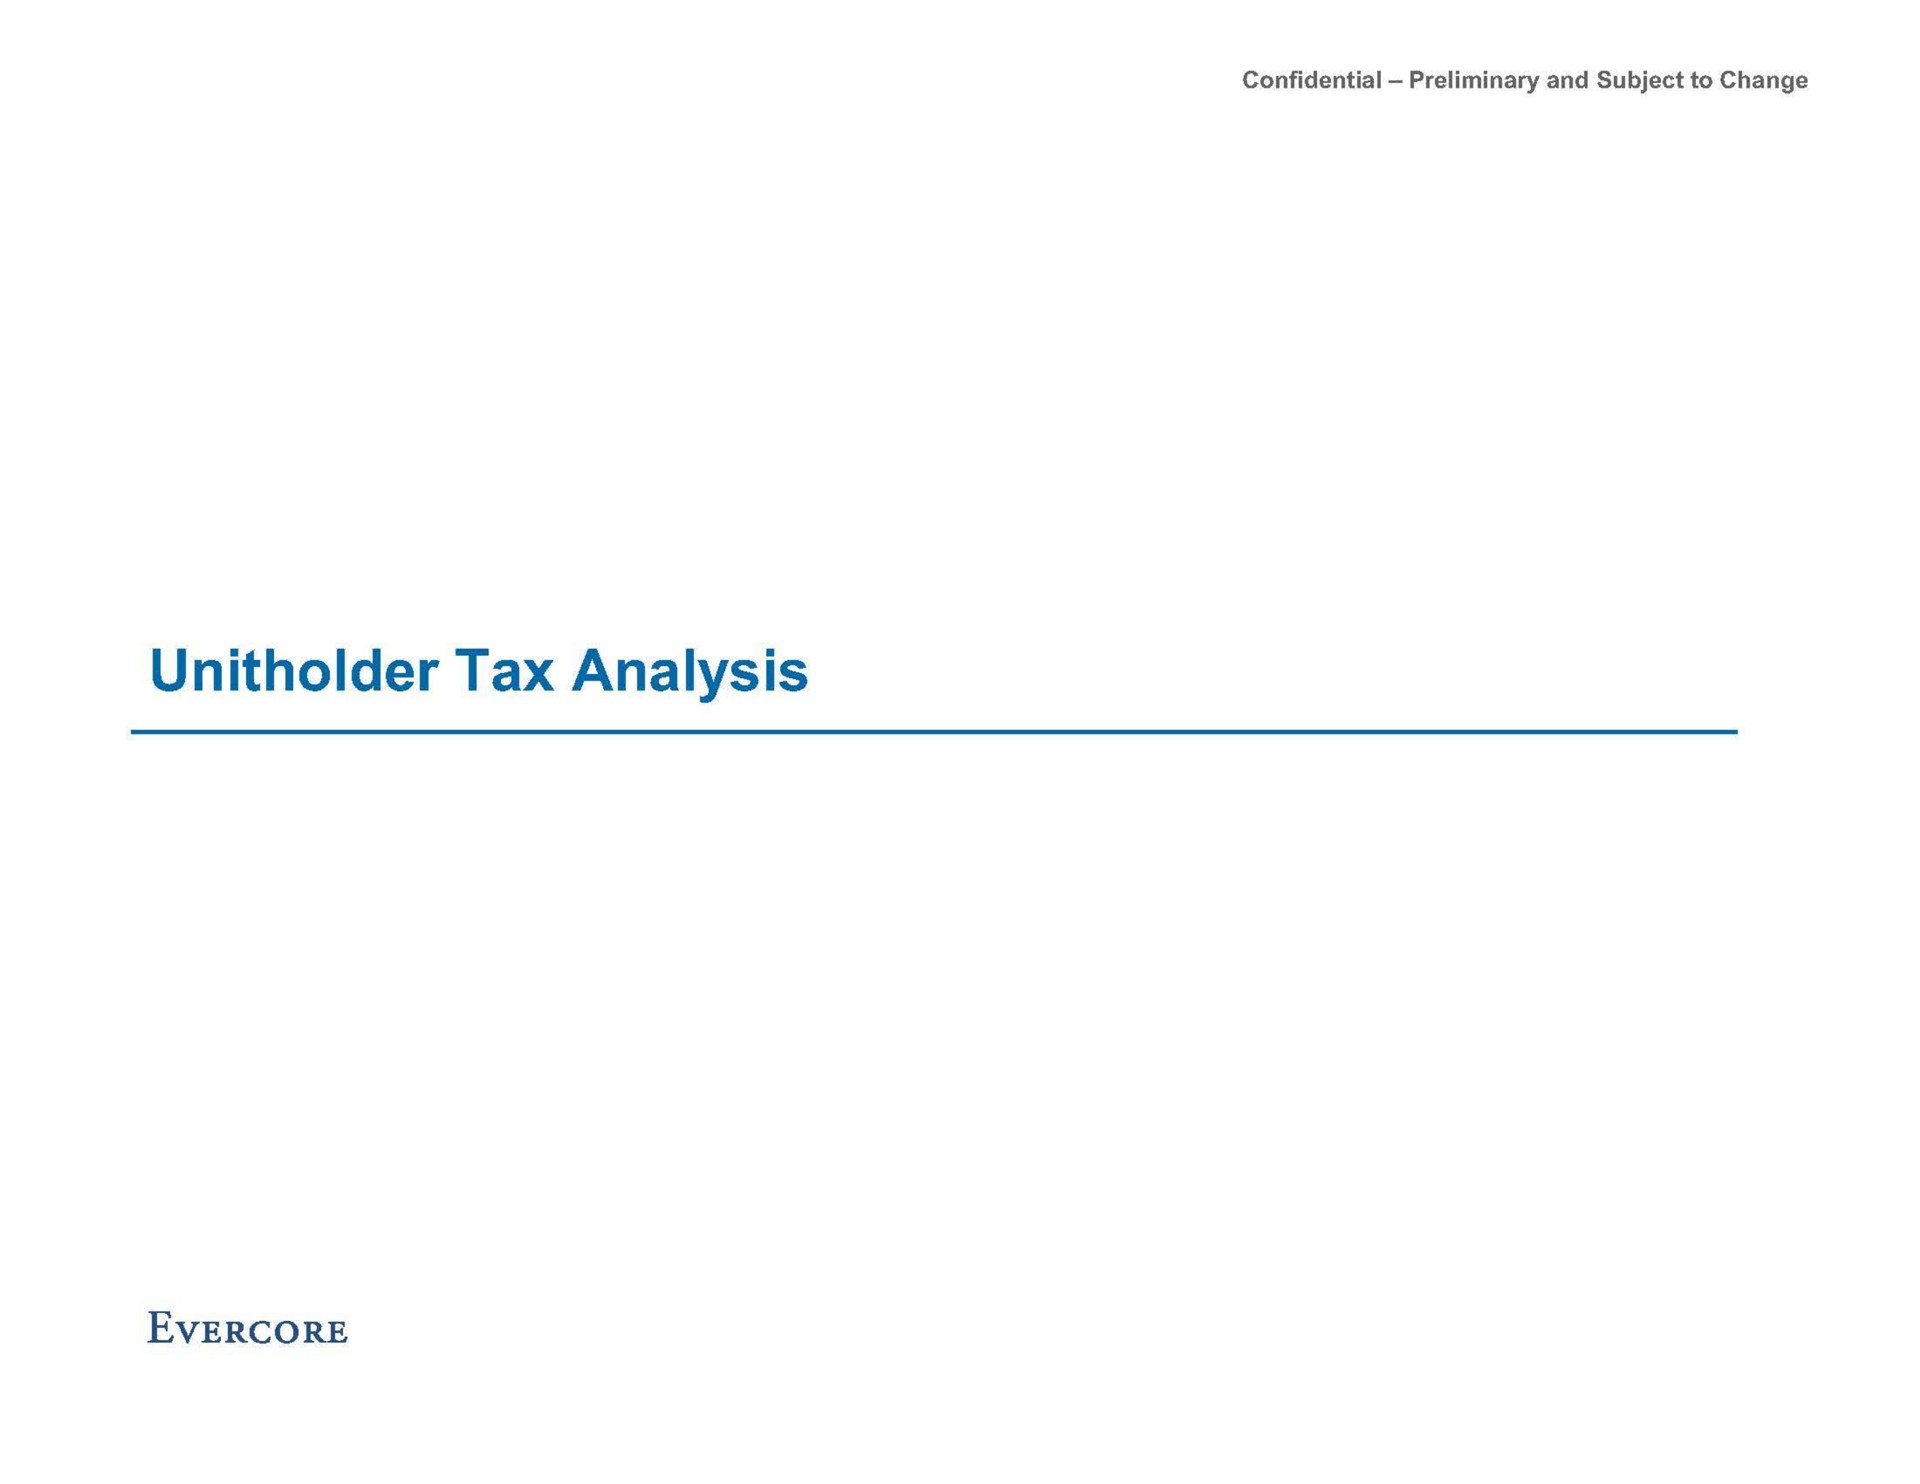 tax analysis | Evercore